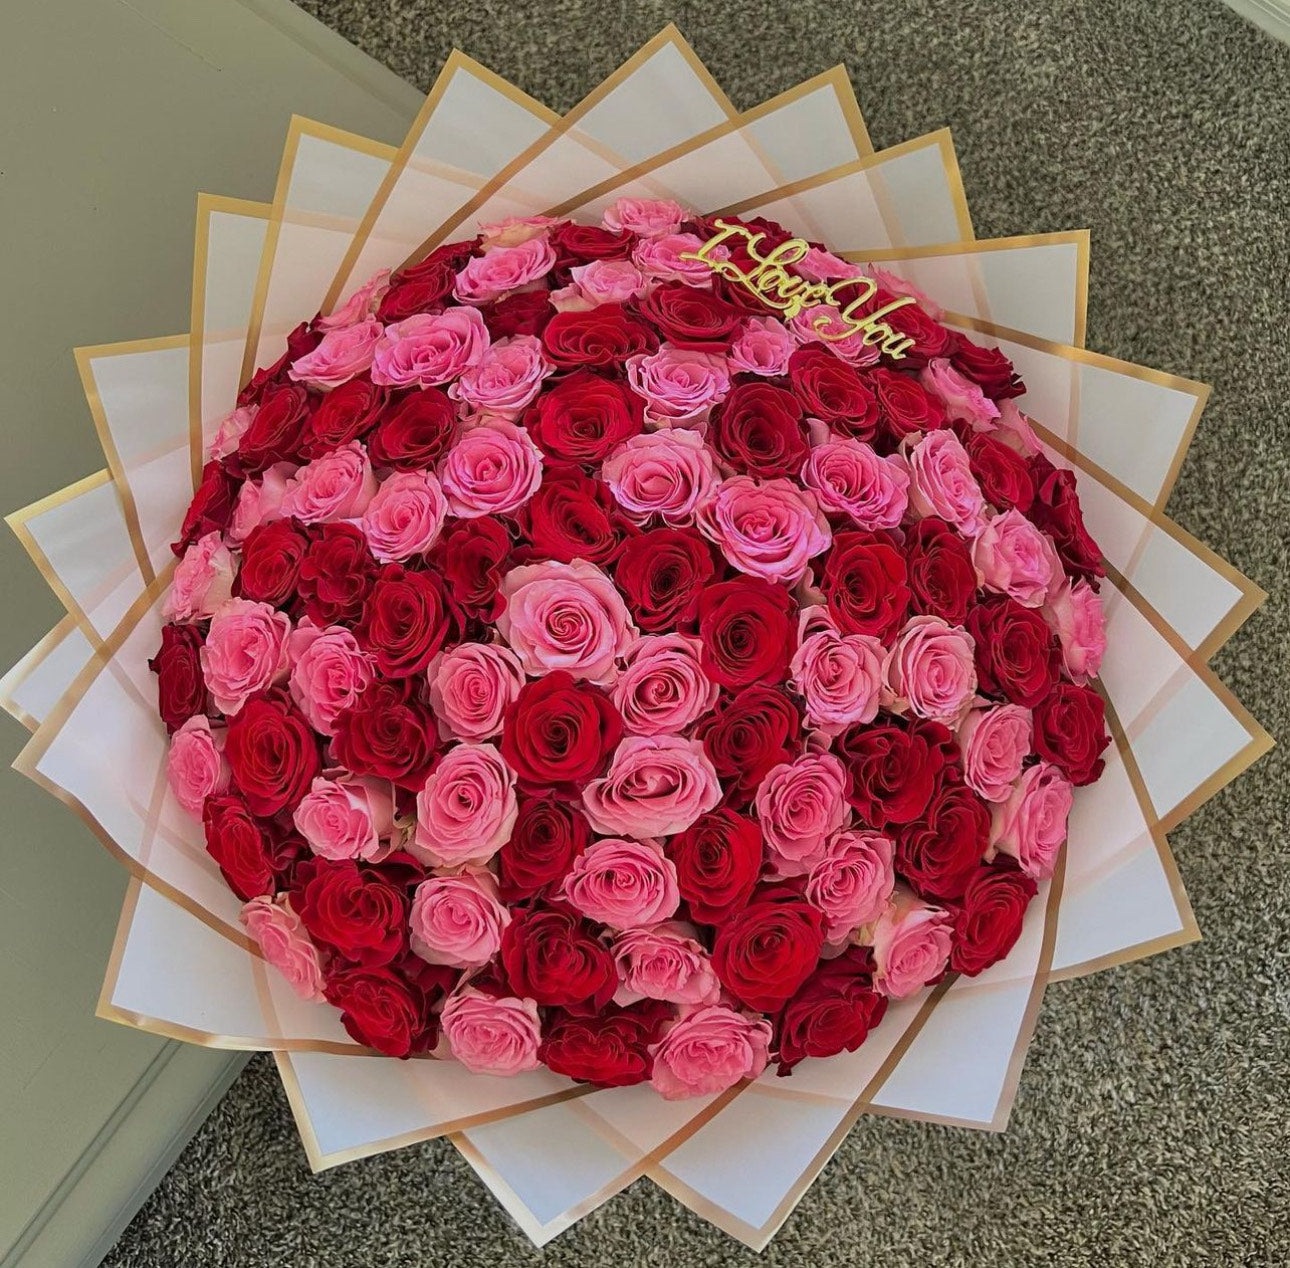 100 Roses Bouquet